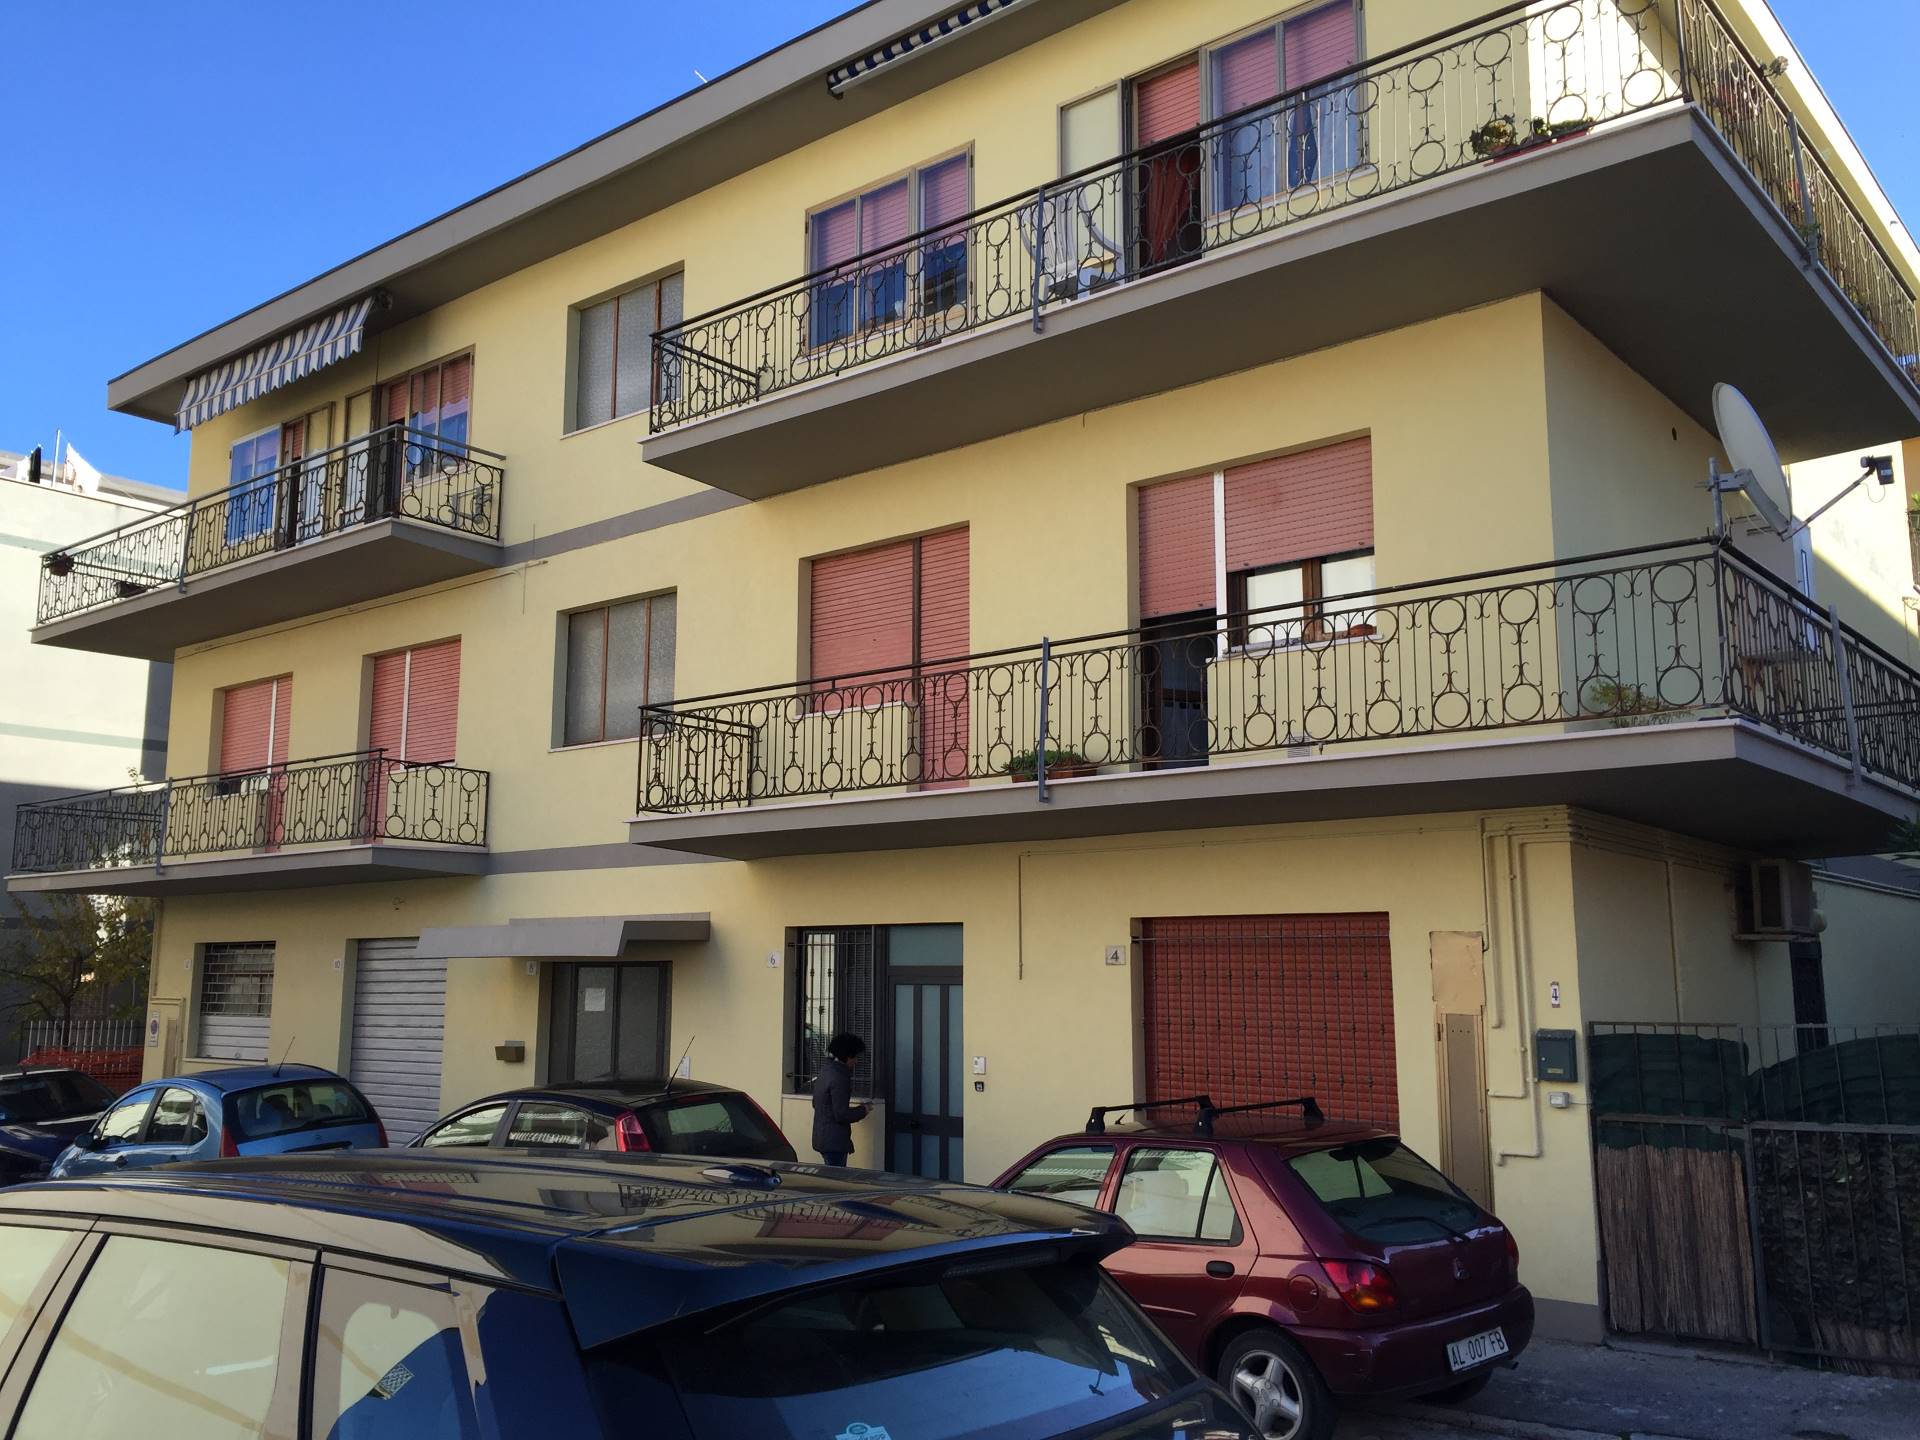 Appartamento in vendita a Vasto, 4 locali, zona Località: ZONACENTRALE, prezzo € 85.000 | CambioCasa.it